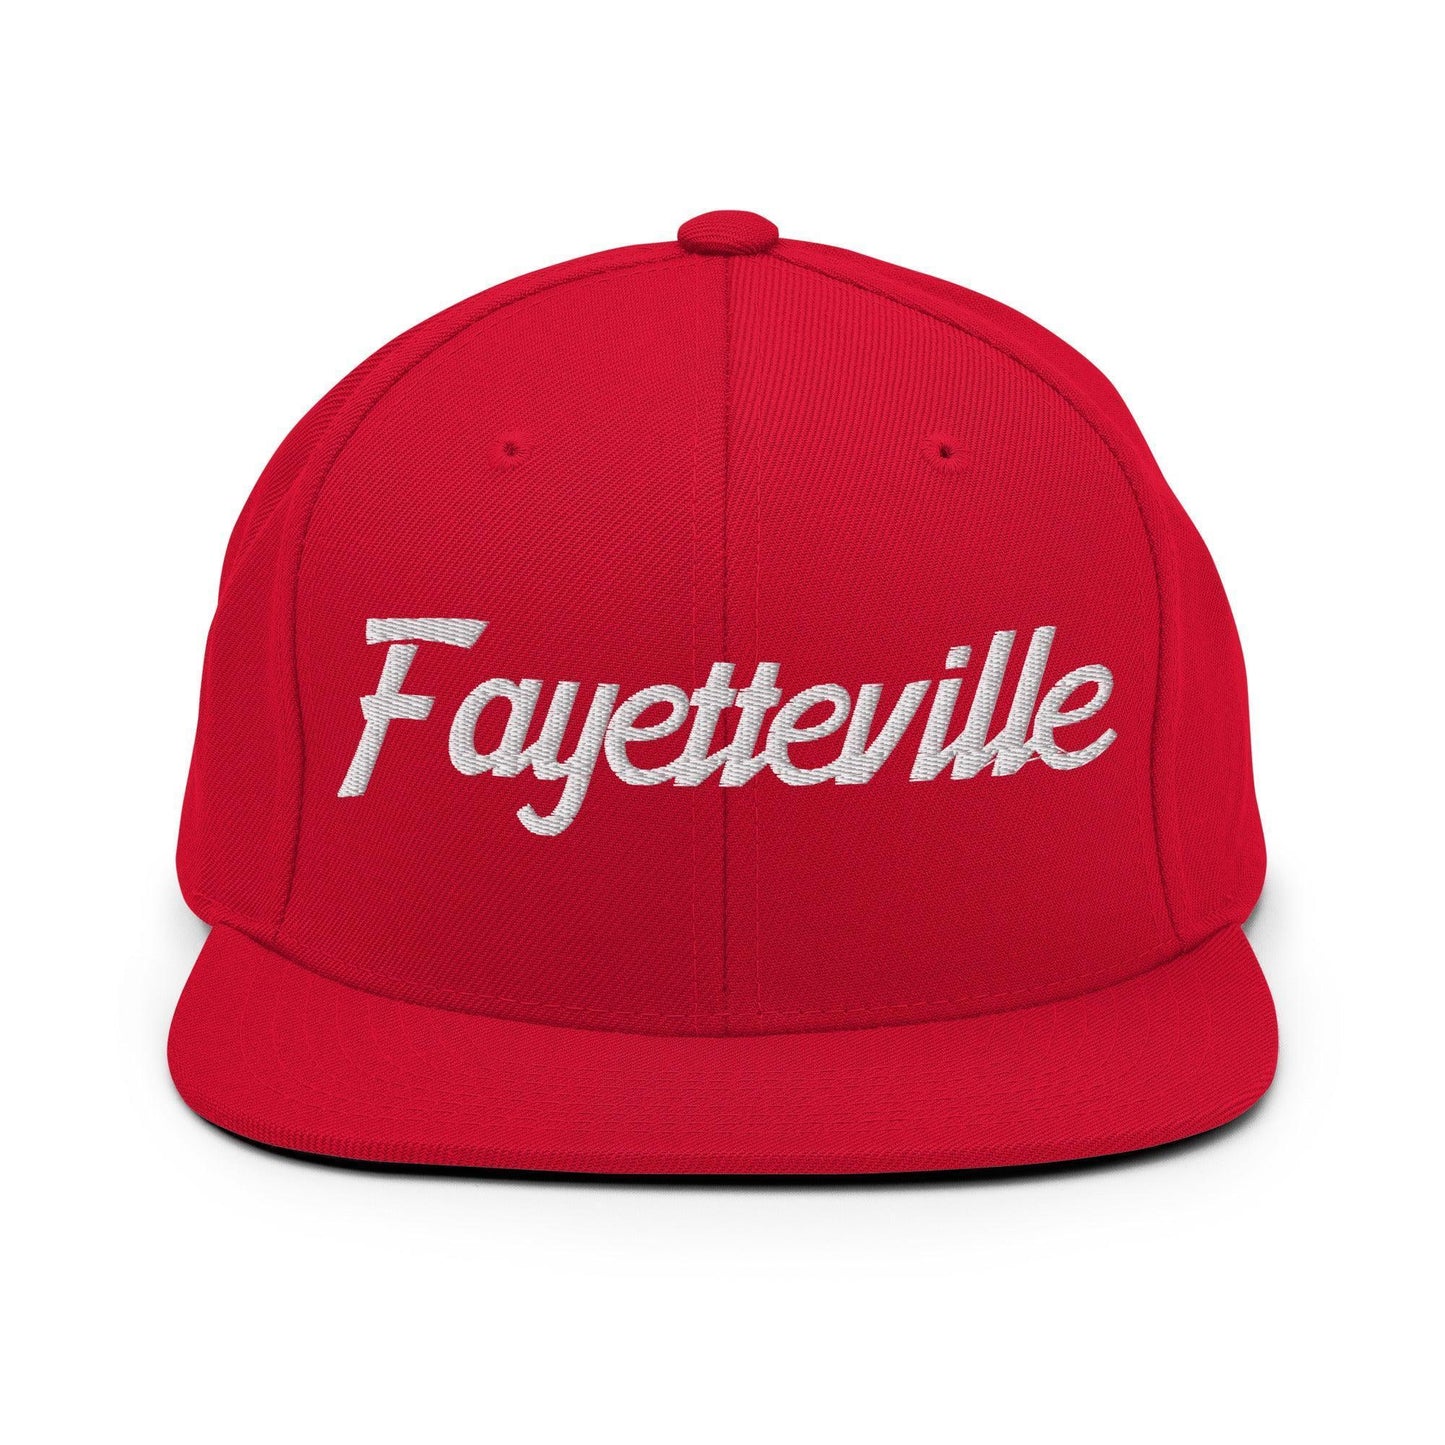 Fayetteville Script Snapback Hat Red